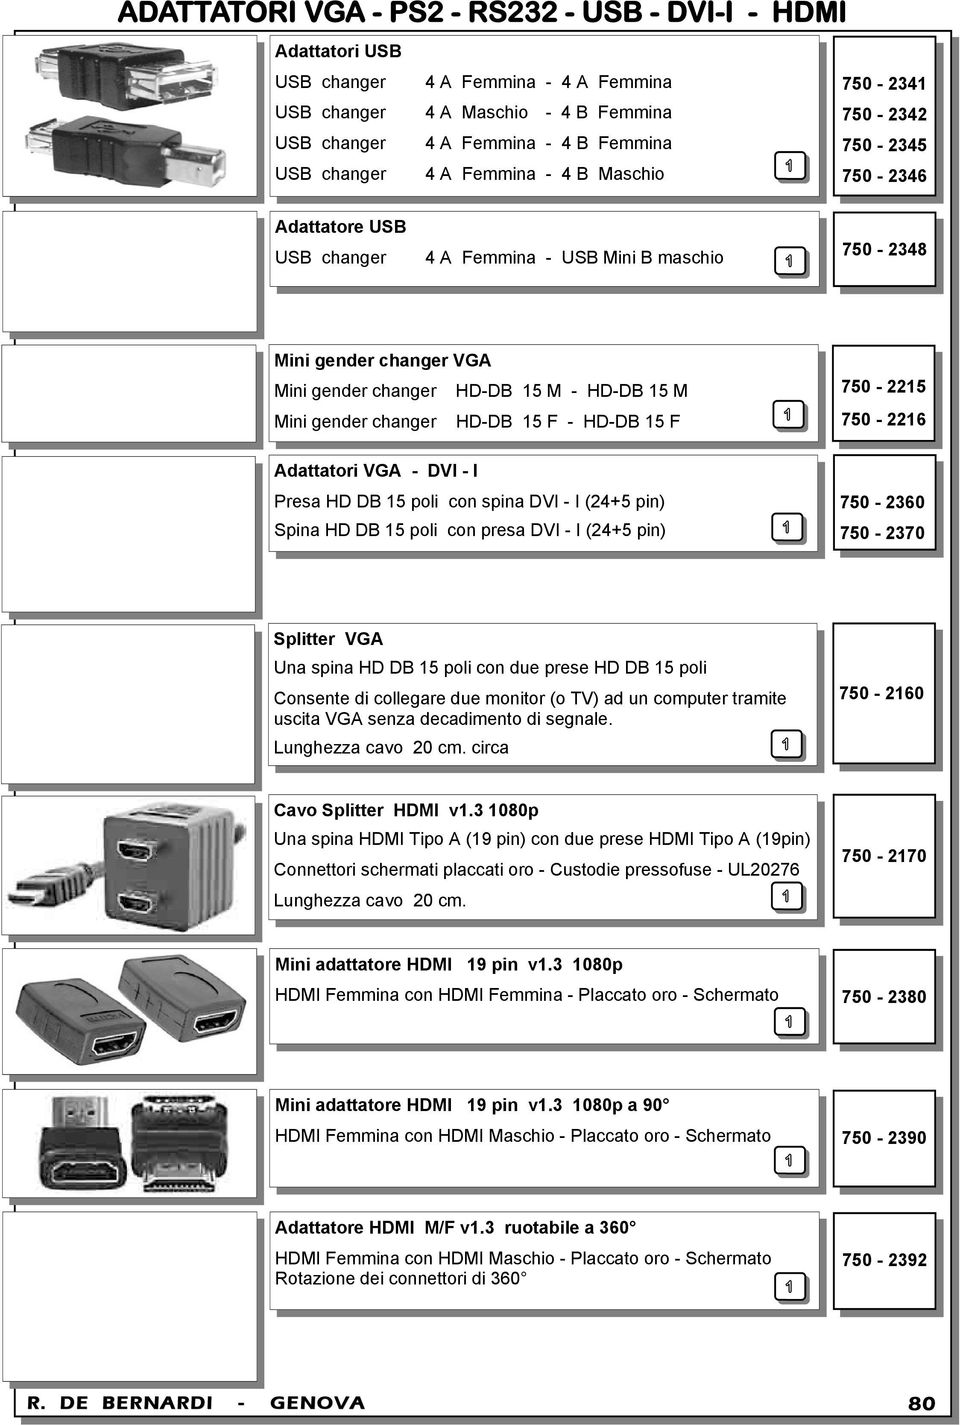 gender changer HD-DB 15 F - HD-DB 15 F Adattatori VGA - DVI - I Presa HD DB 15 poli con spina DVI - I (24+5 pin) Spina HD DB 15 poli con presa DVI - I (24+5 pin) 750-2215 750-2216 750-2360 750-2370